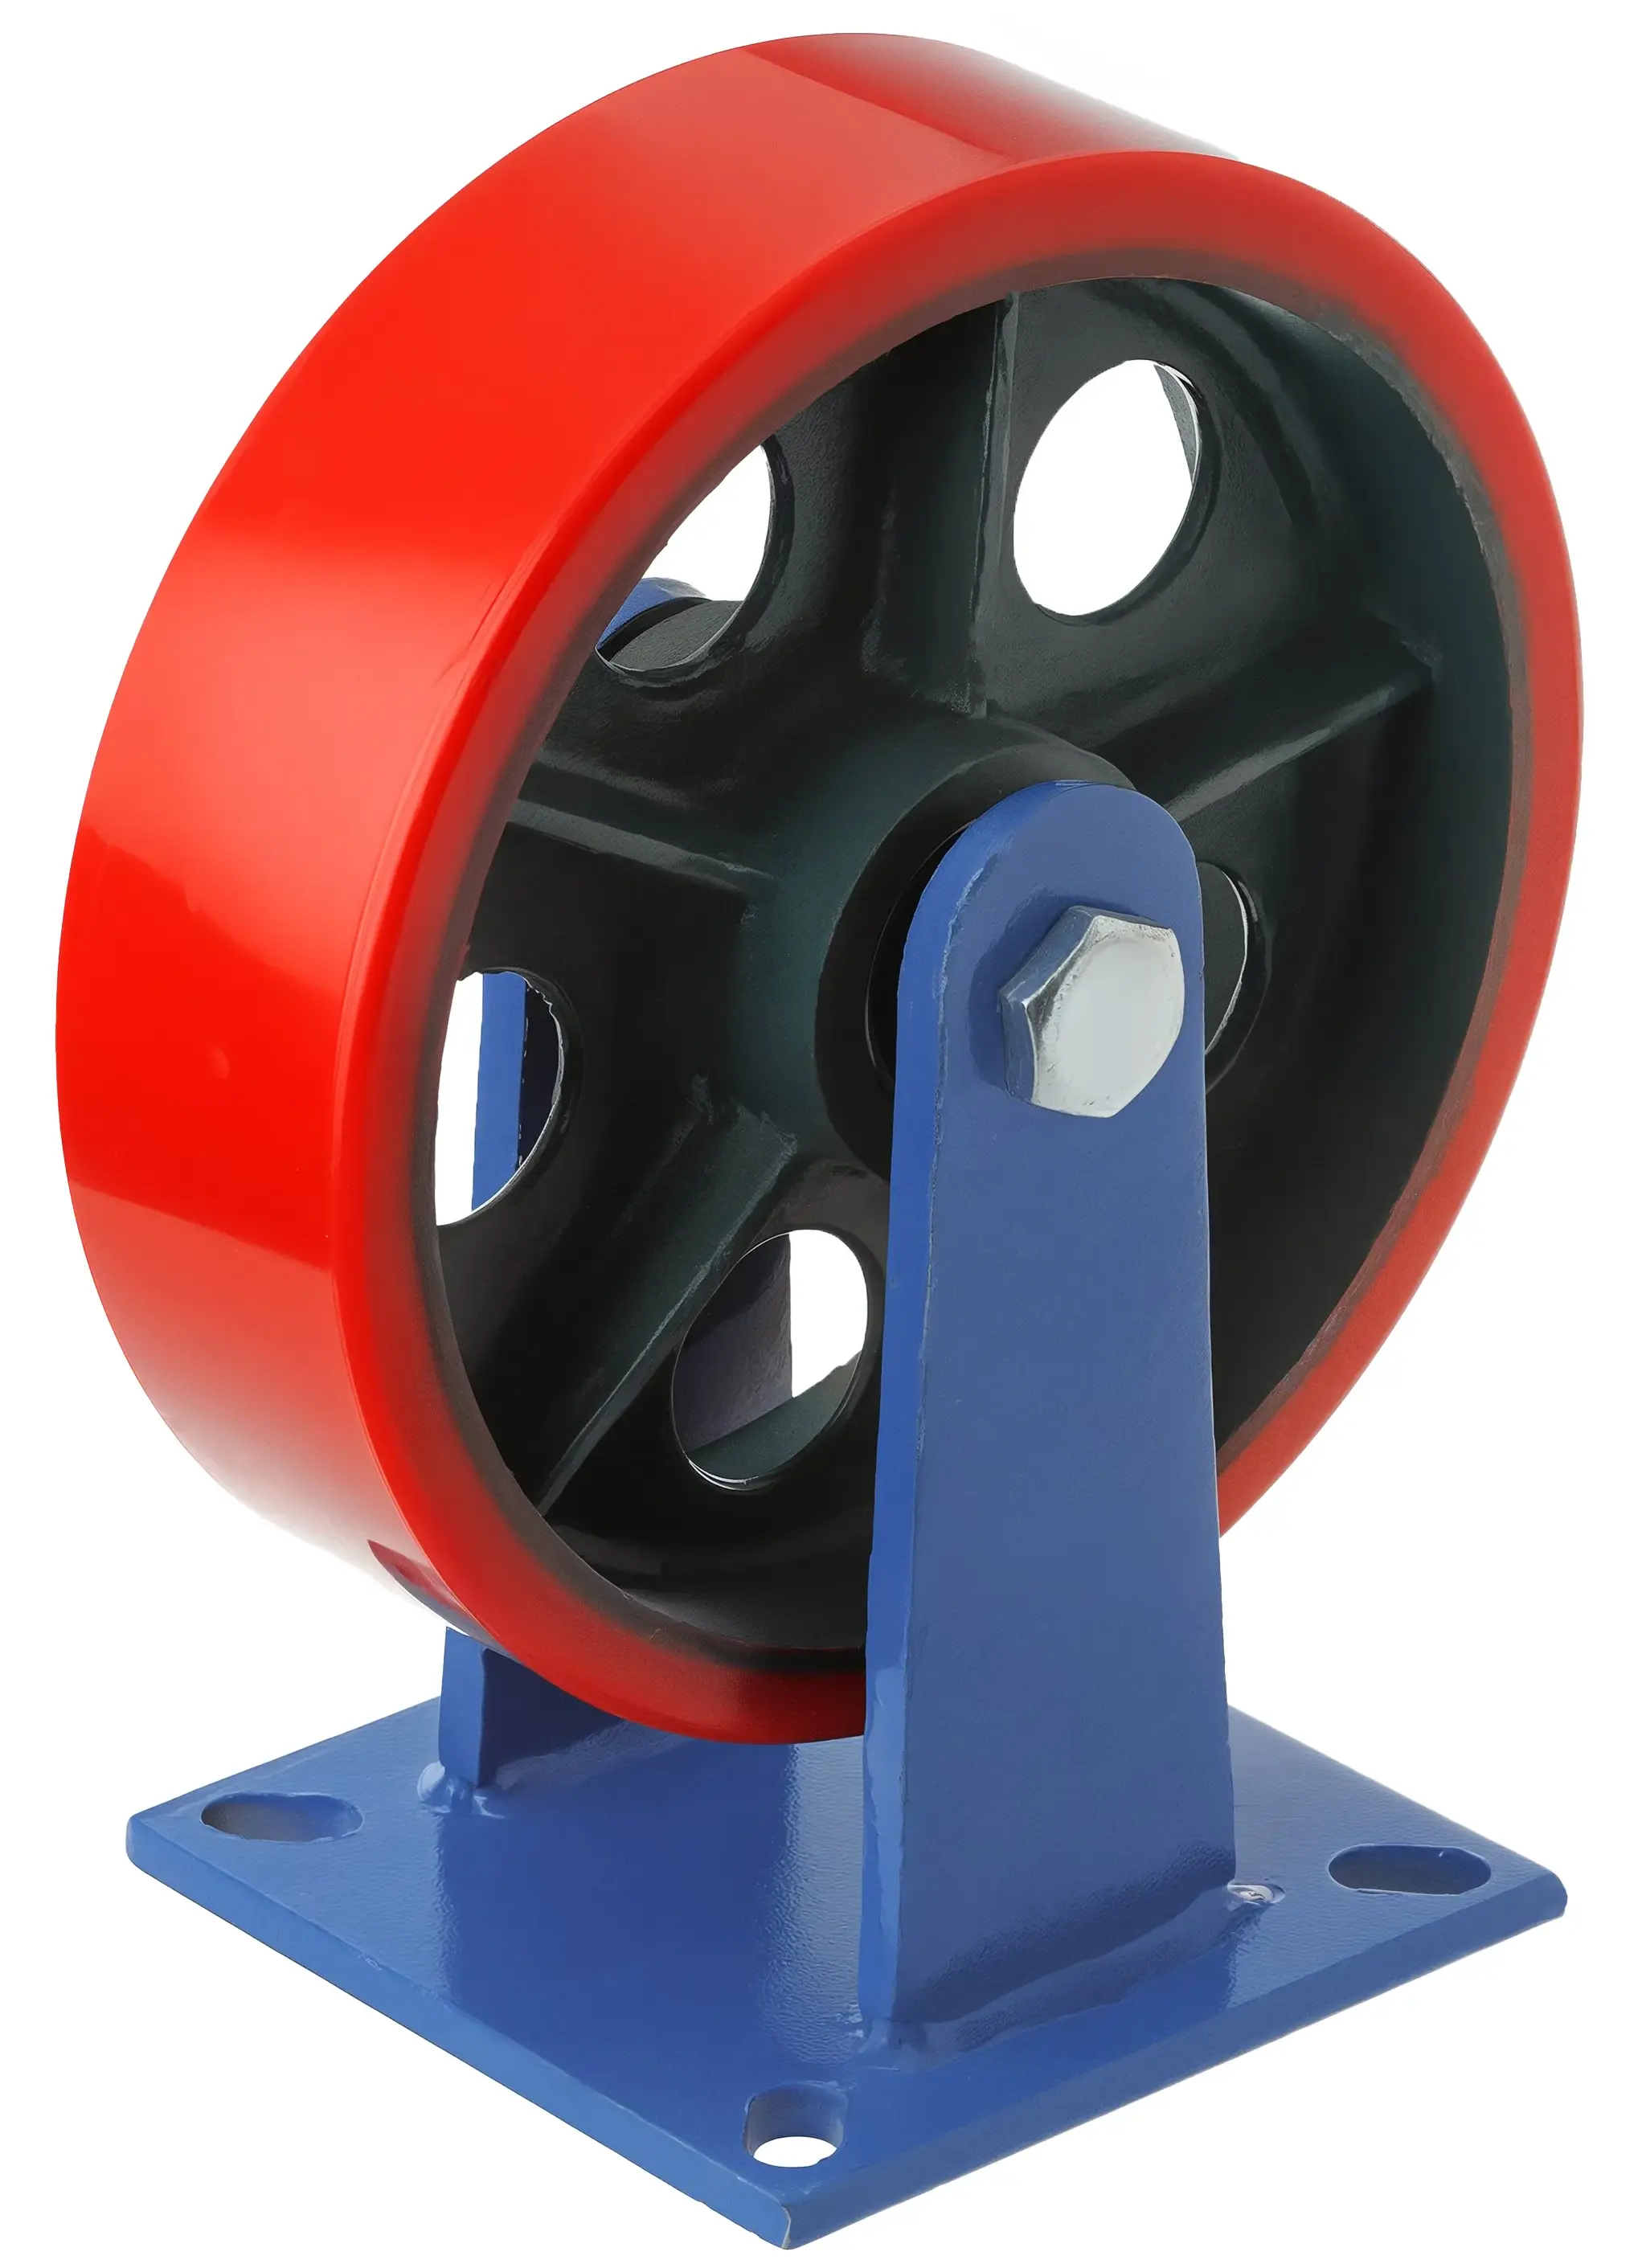 FHpo85 - Сверхбольшегрузное полиуретановое колесо 250 мм, 950 кг (площадка, неповоротн., шарикоподш.)